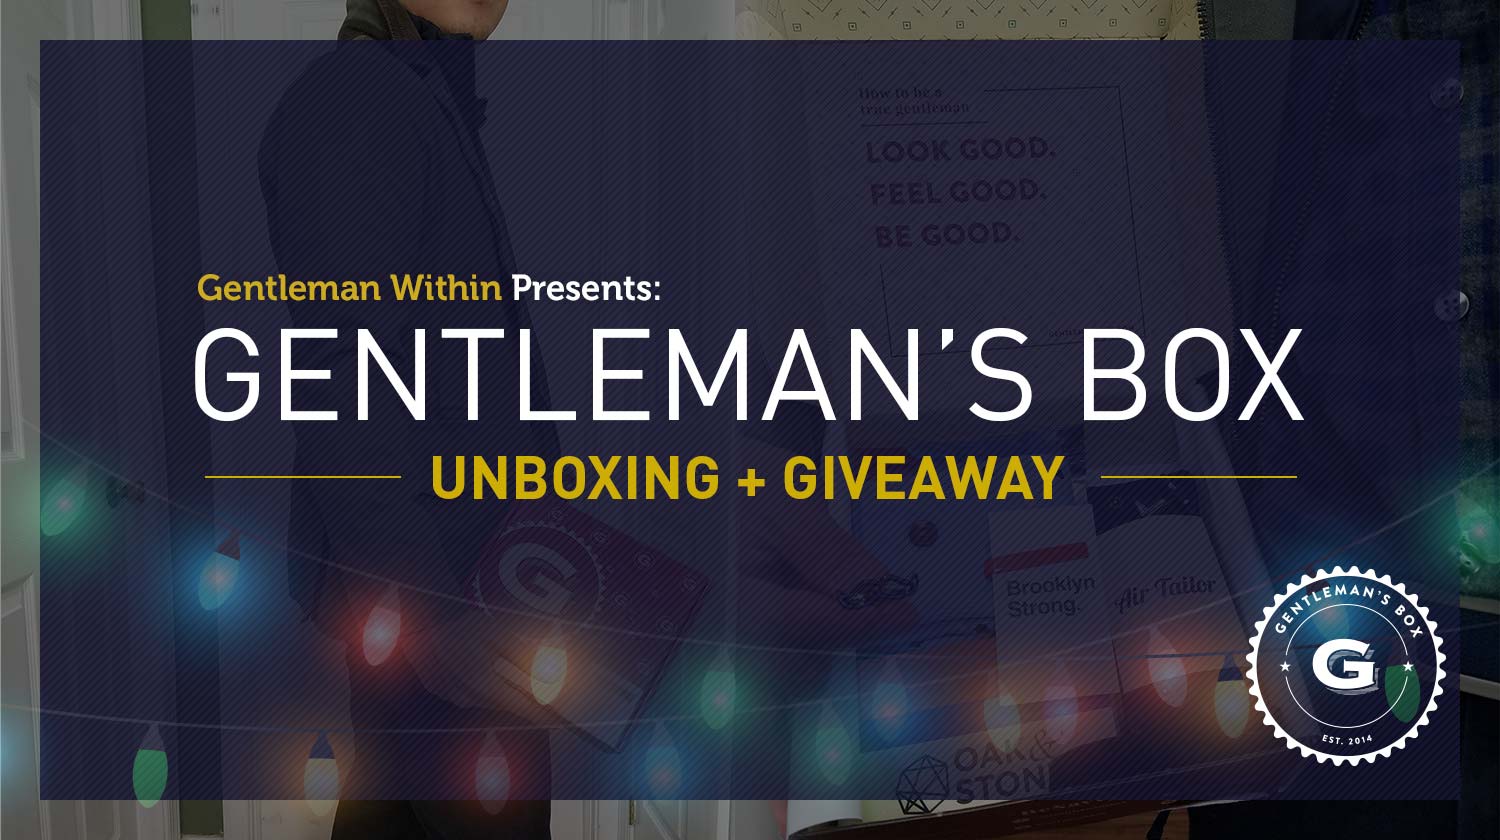 Gentleman's Box Unboxing & Giveaway | GENTLEMAN WITHIN